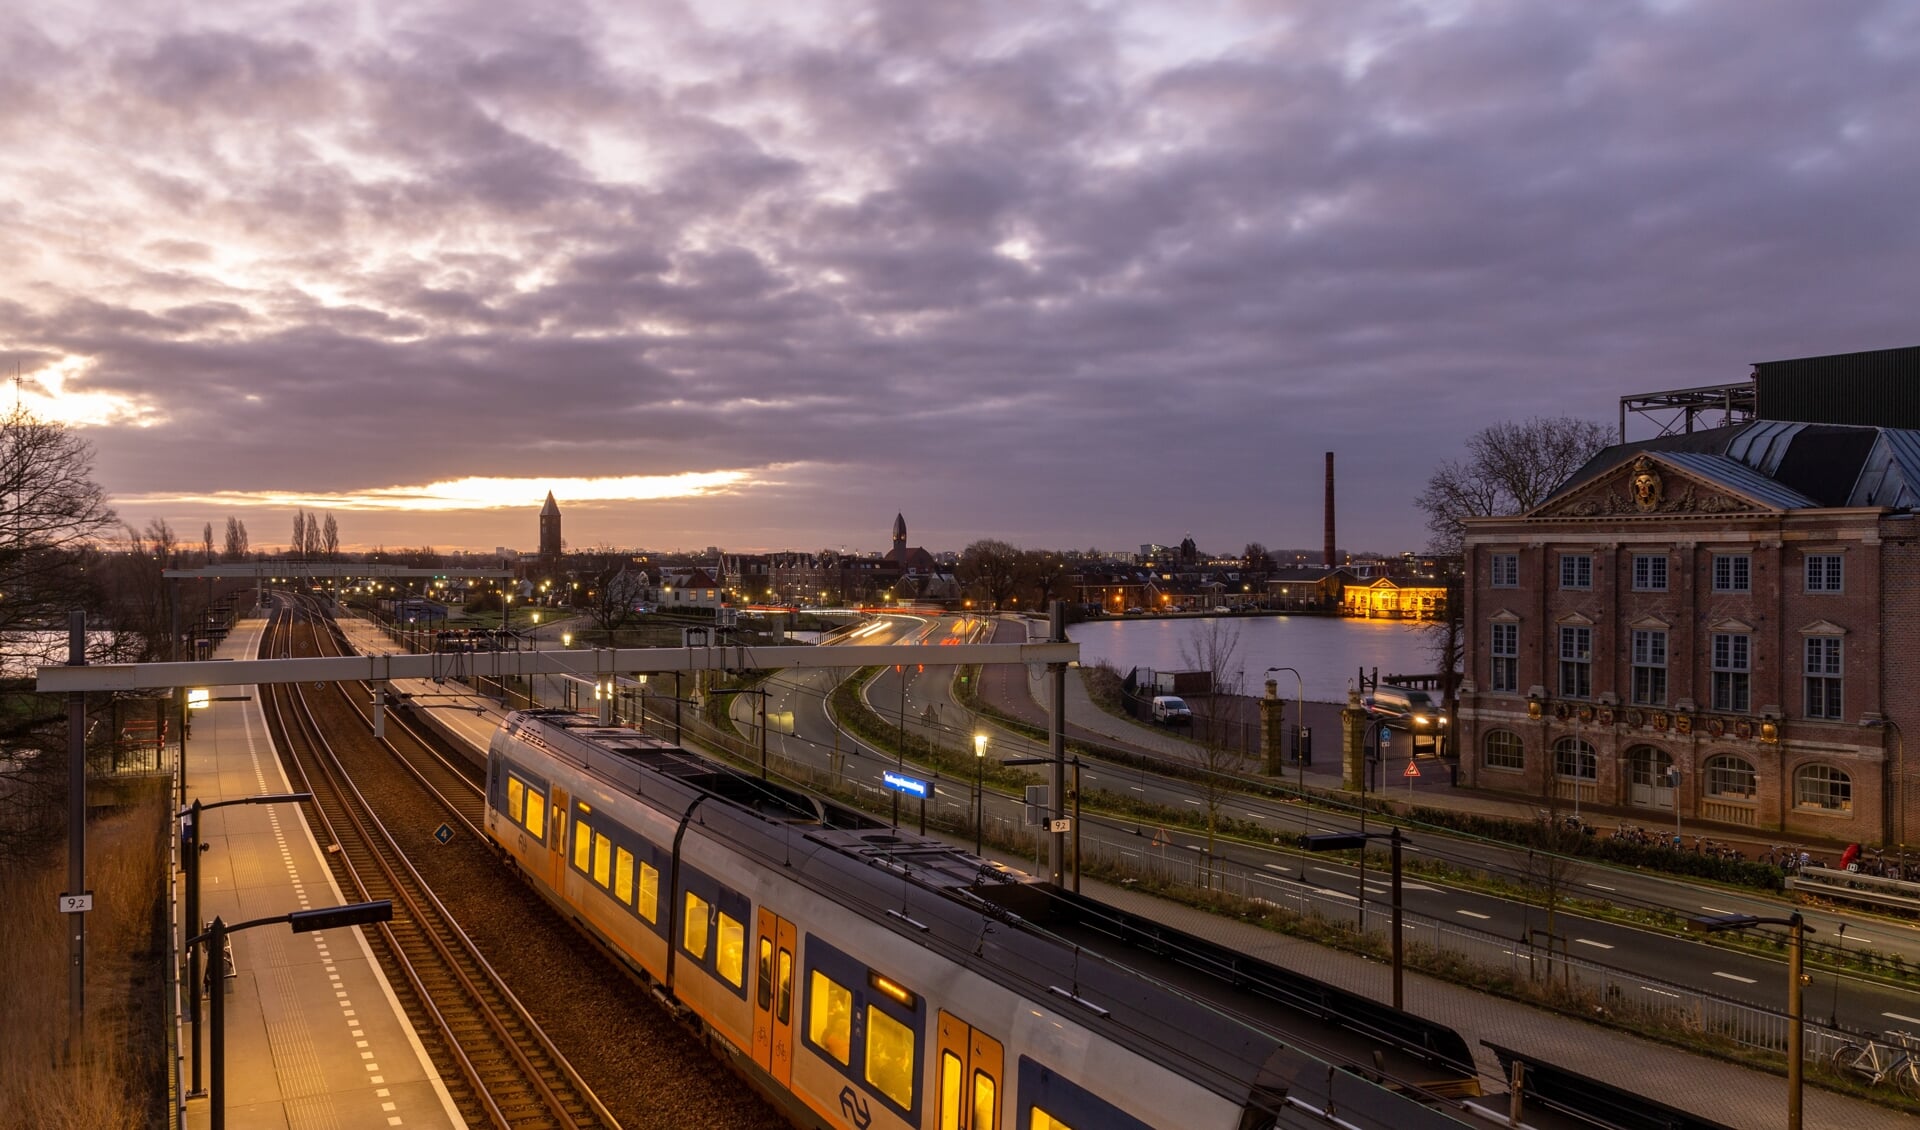 De winnaar van deze week Michel Looyenstein biedt een bijzondere kijk op het station Halfweg-Zwanenburg.